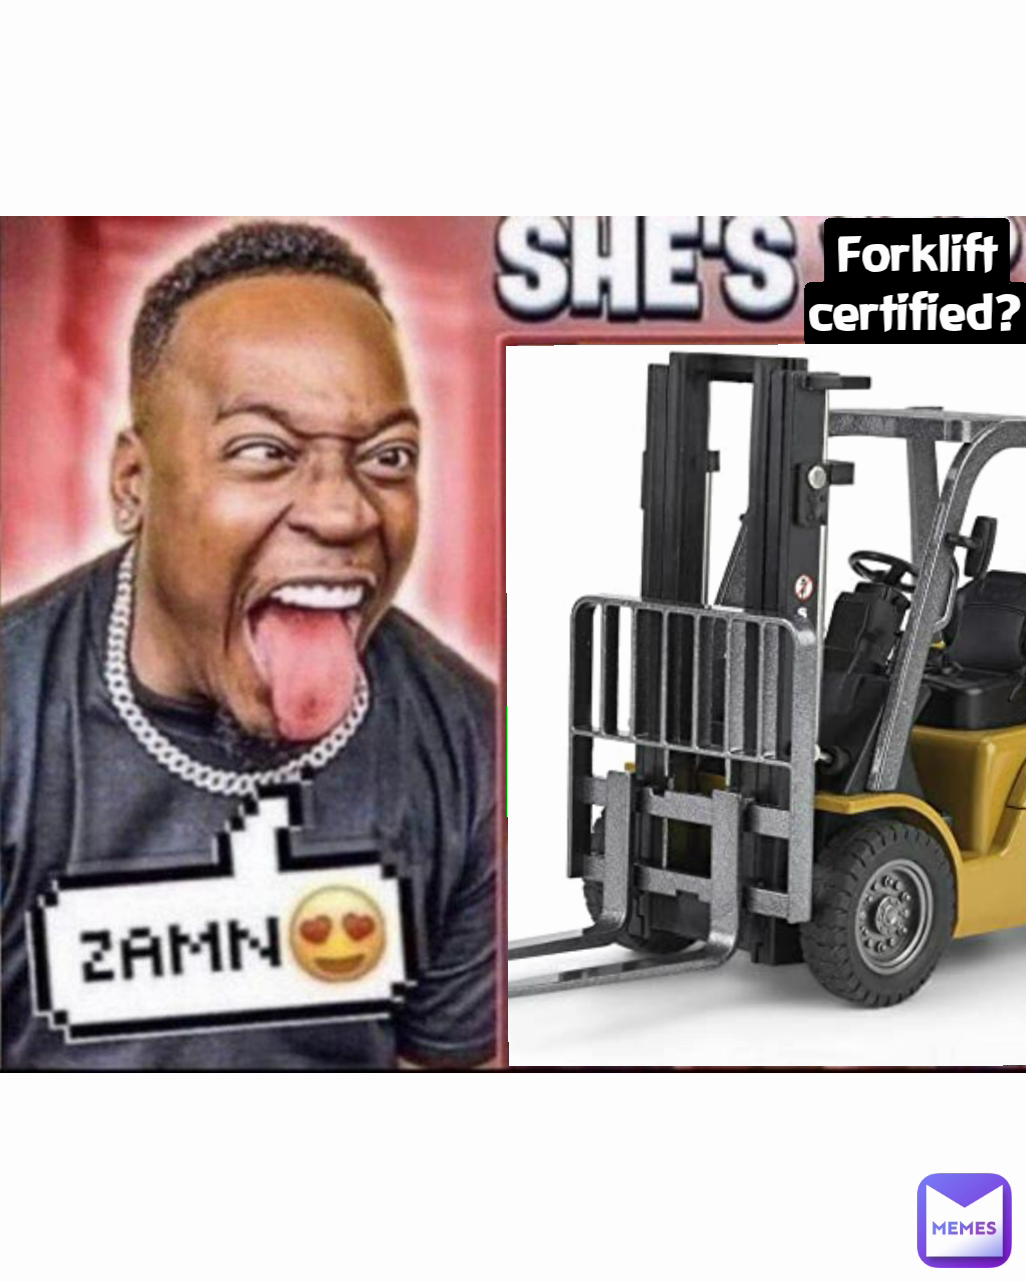 Forklift certified?